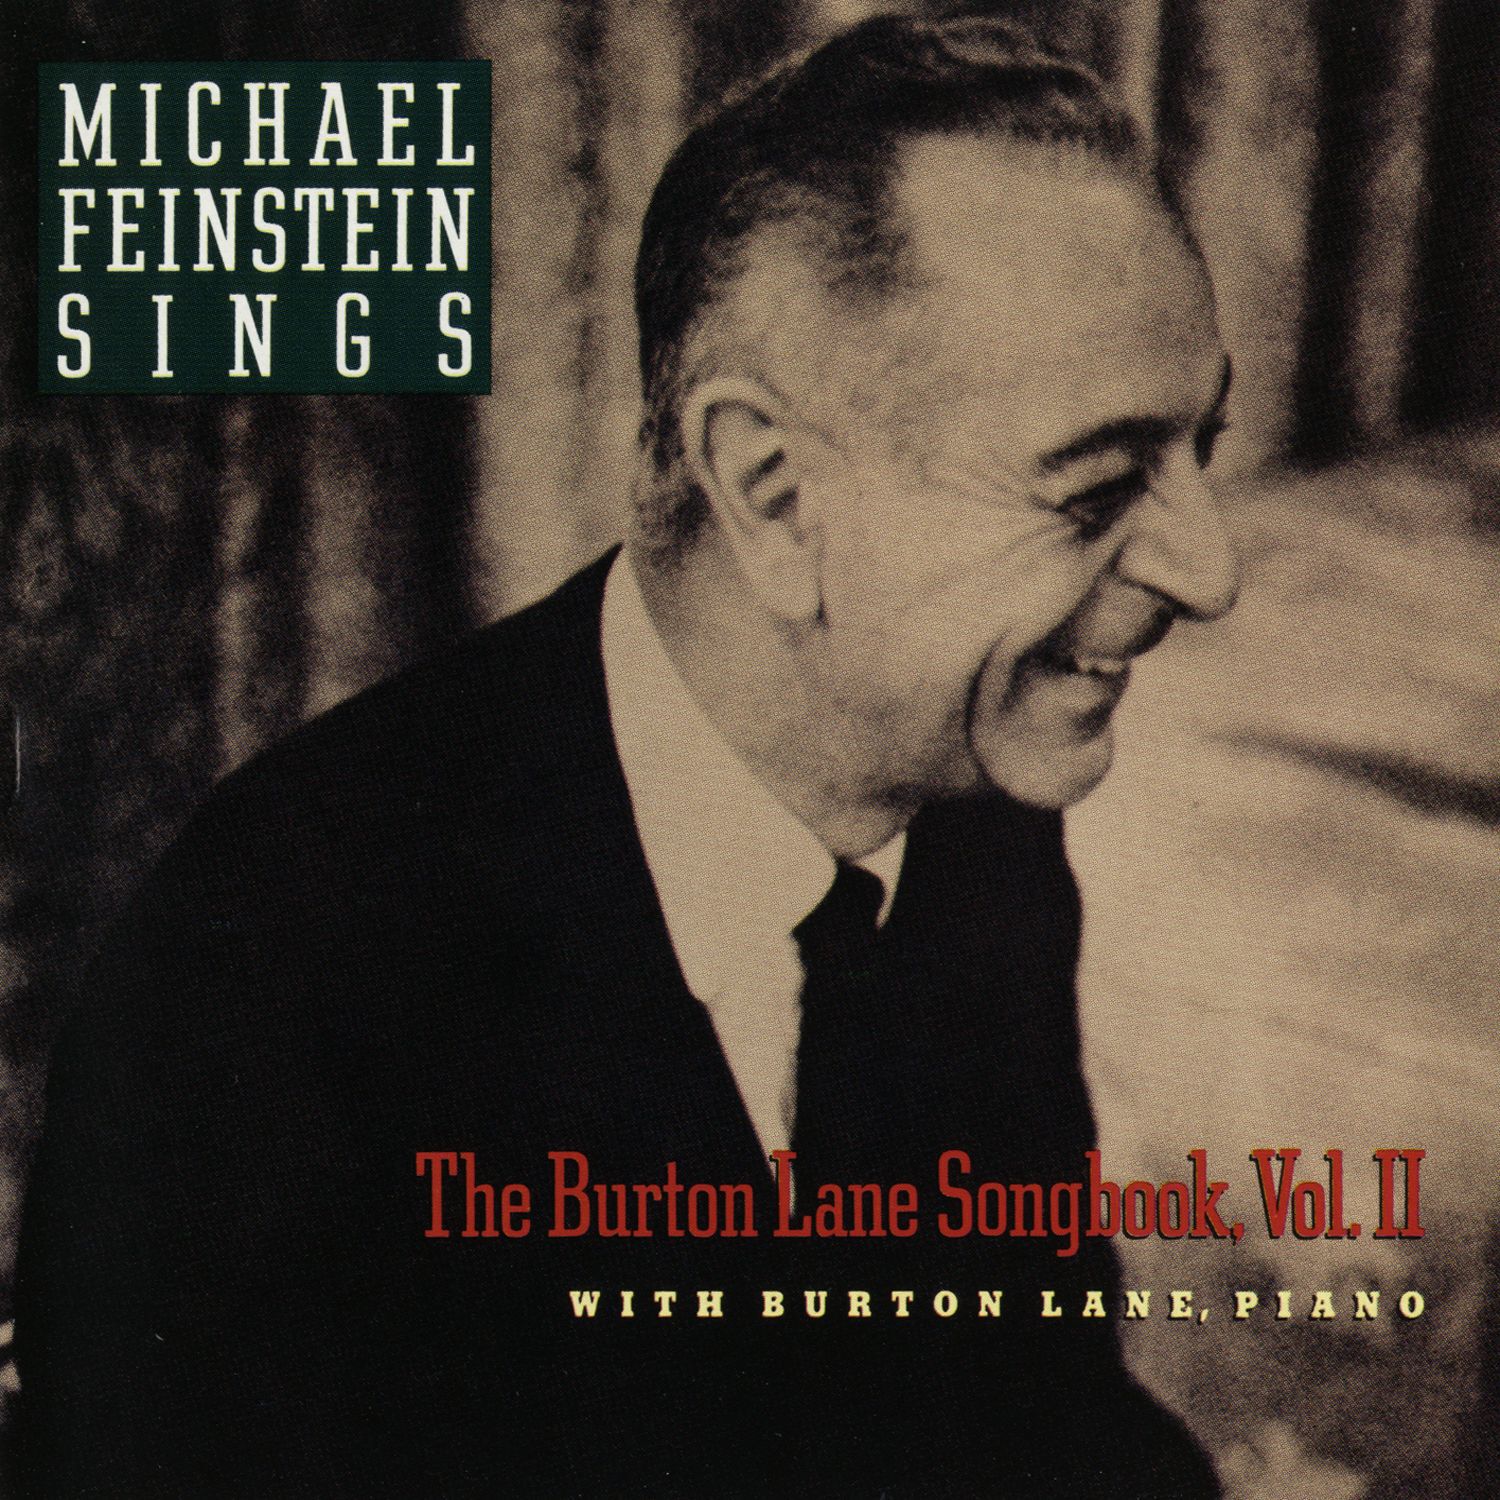 Michael Feinstein Sings The Burton Lane Songbook, Vol. II Digital